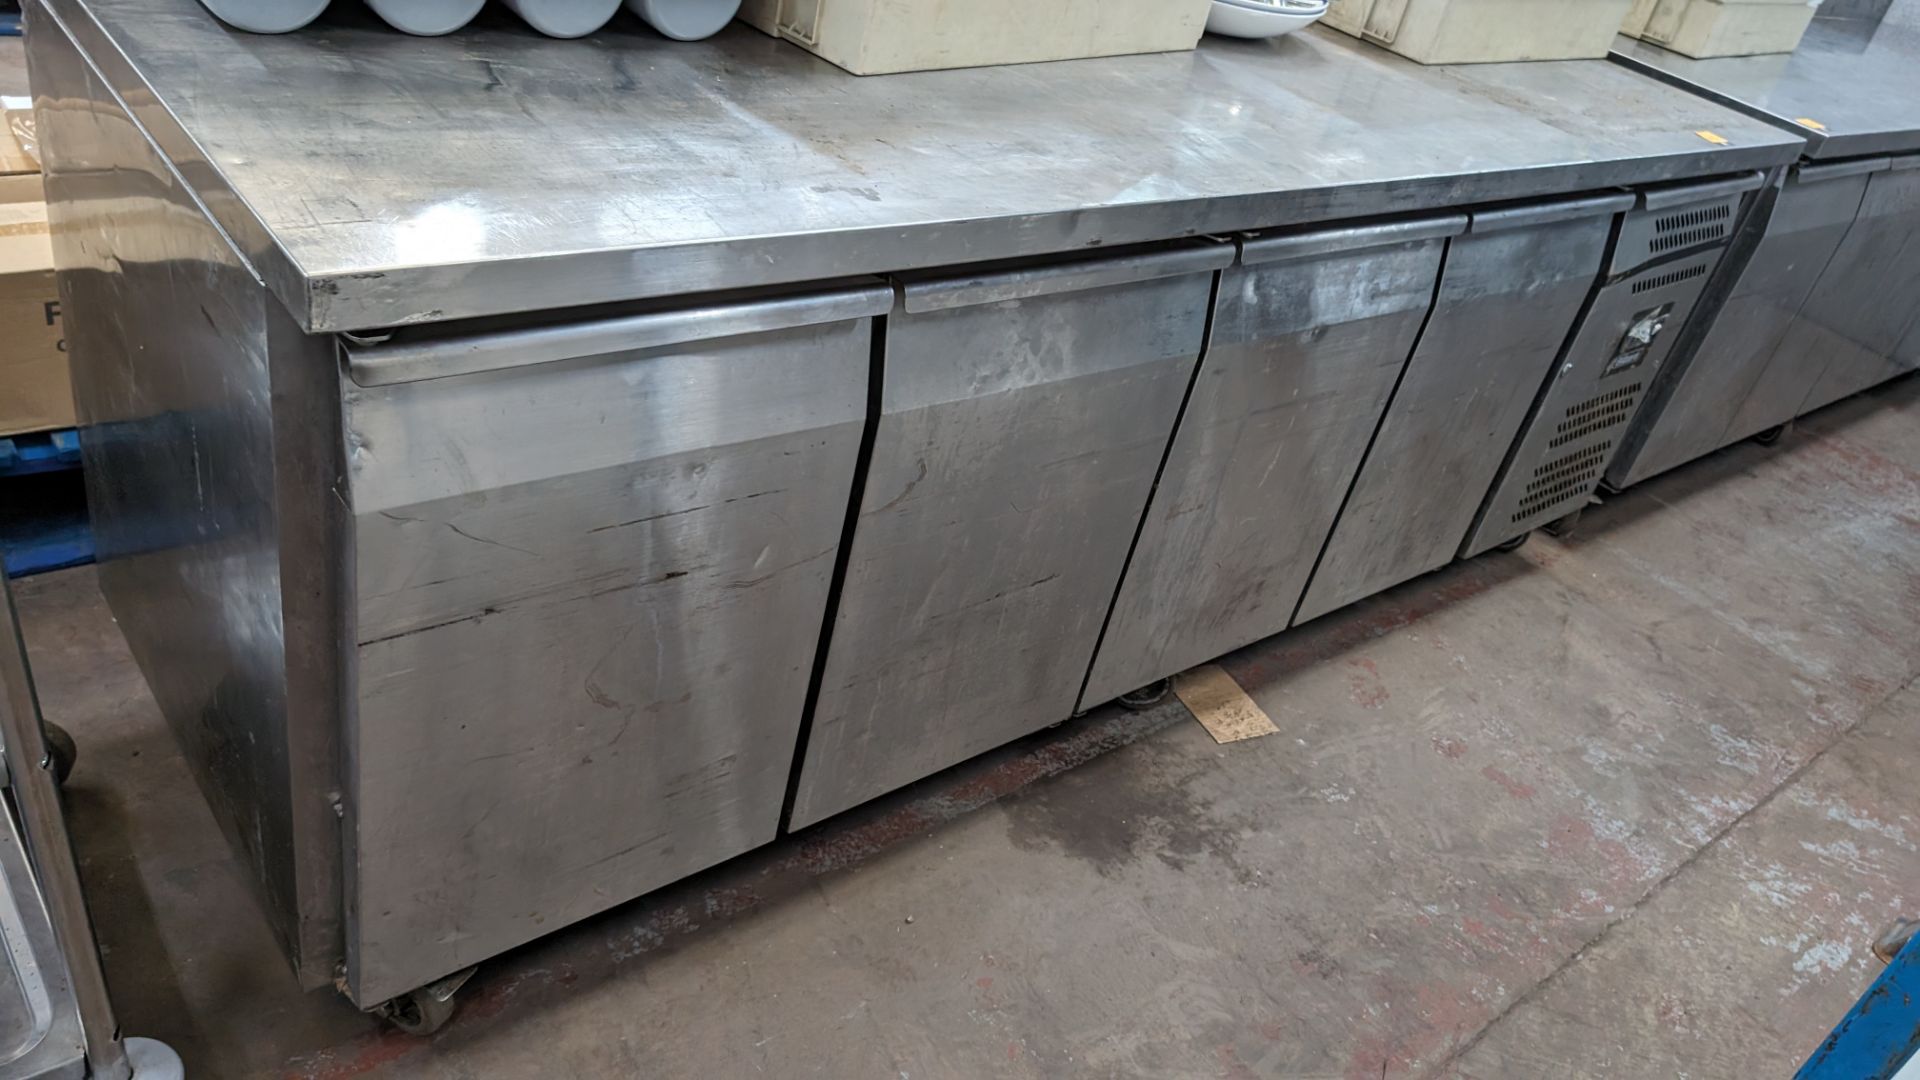 Blizzard stainless steel 4-door refrigerated prep cabinet - Bild 3 aus 8